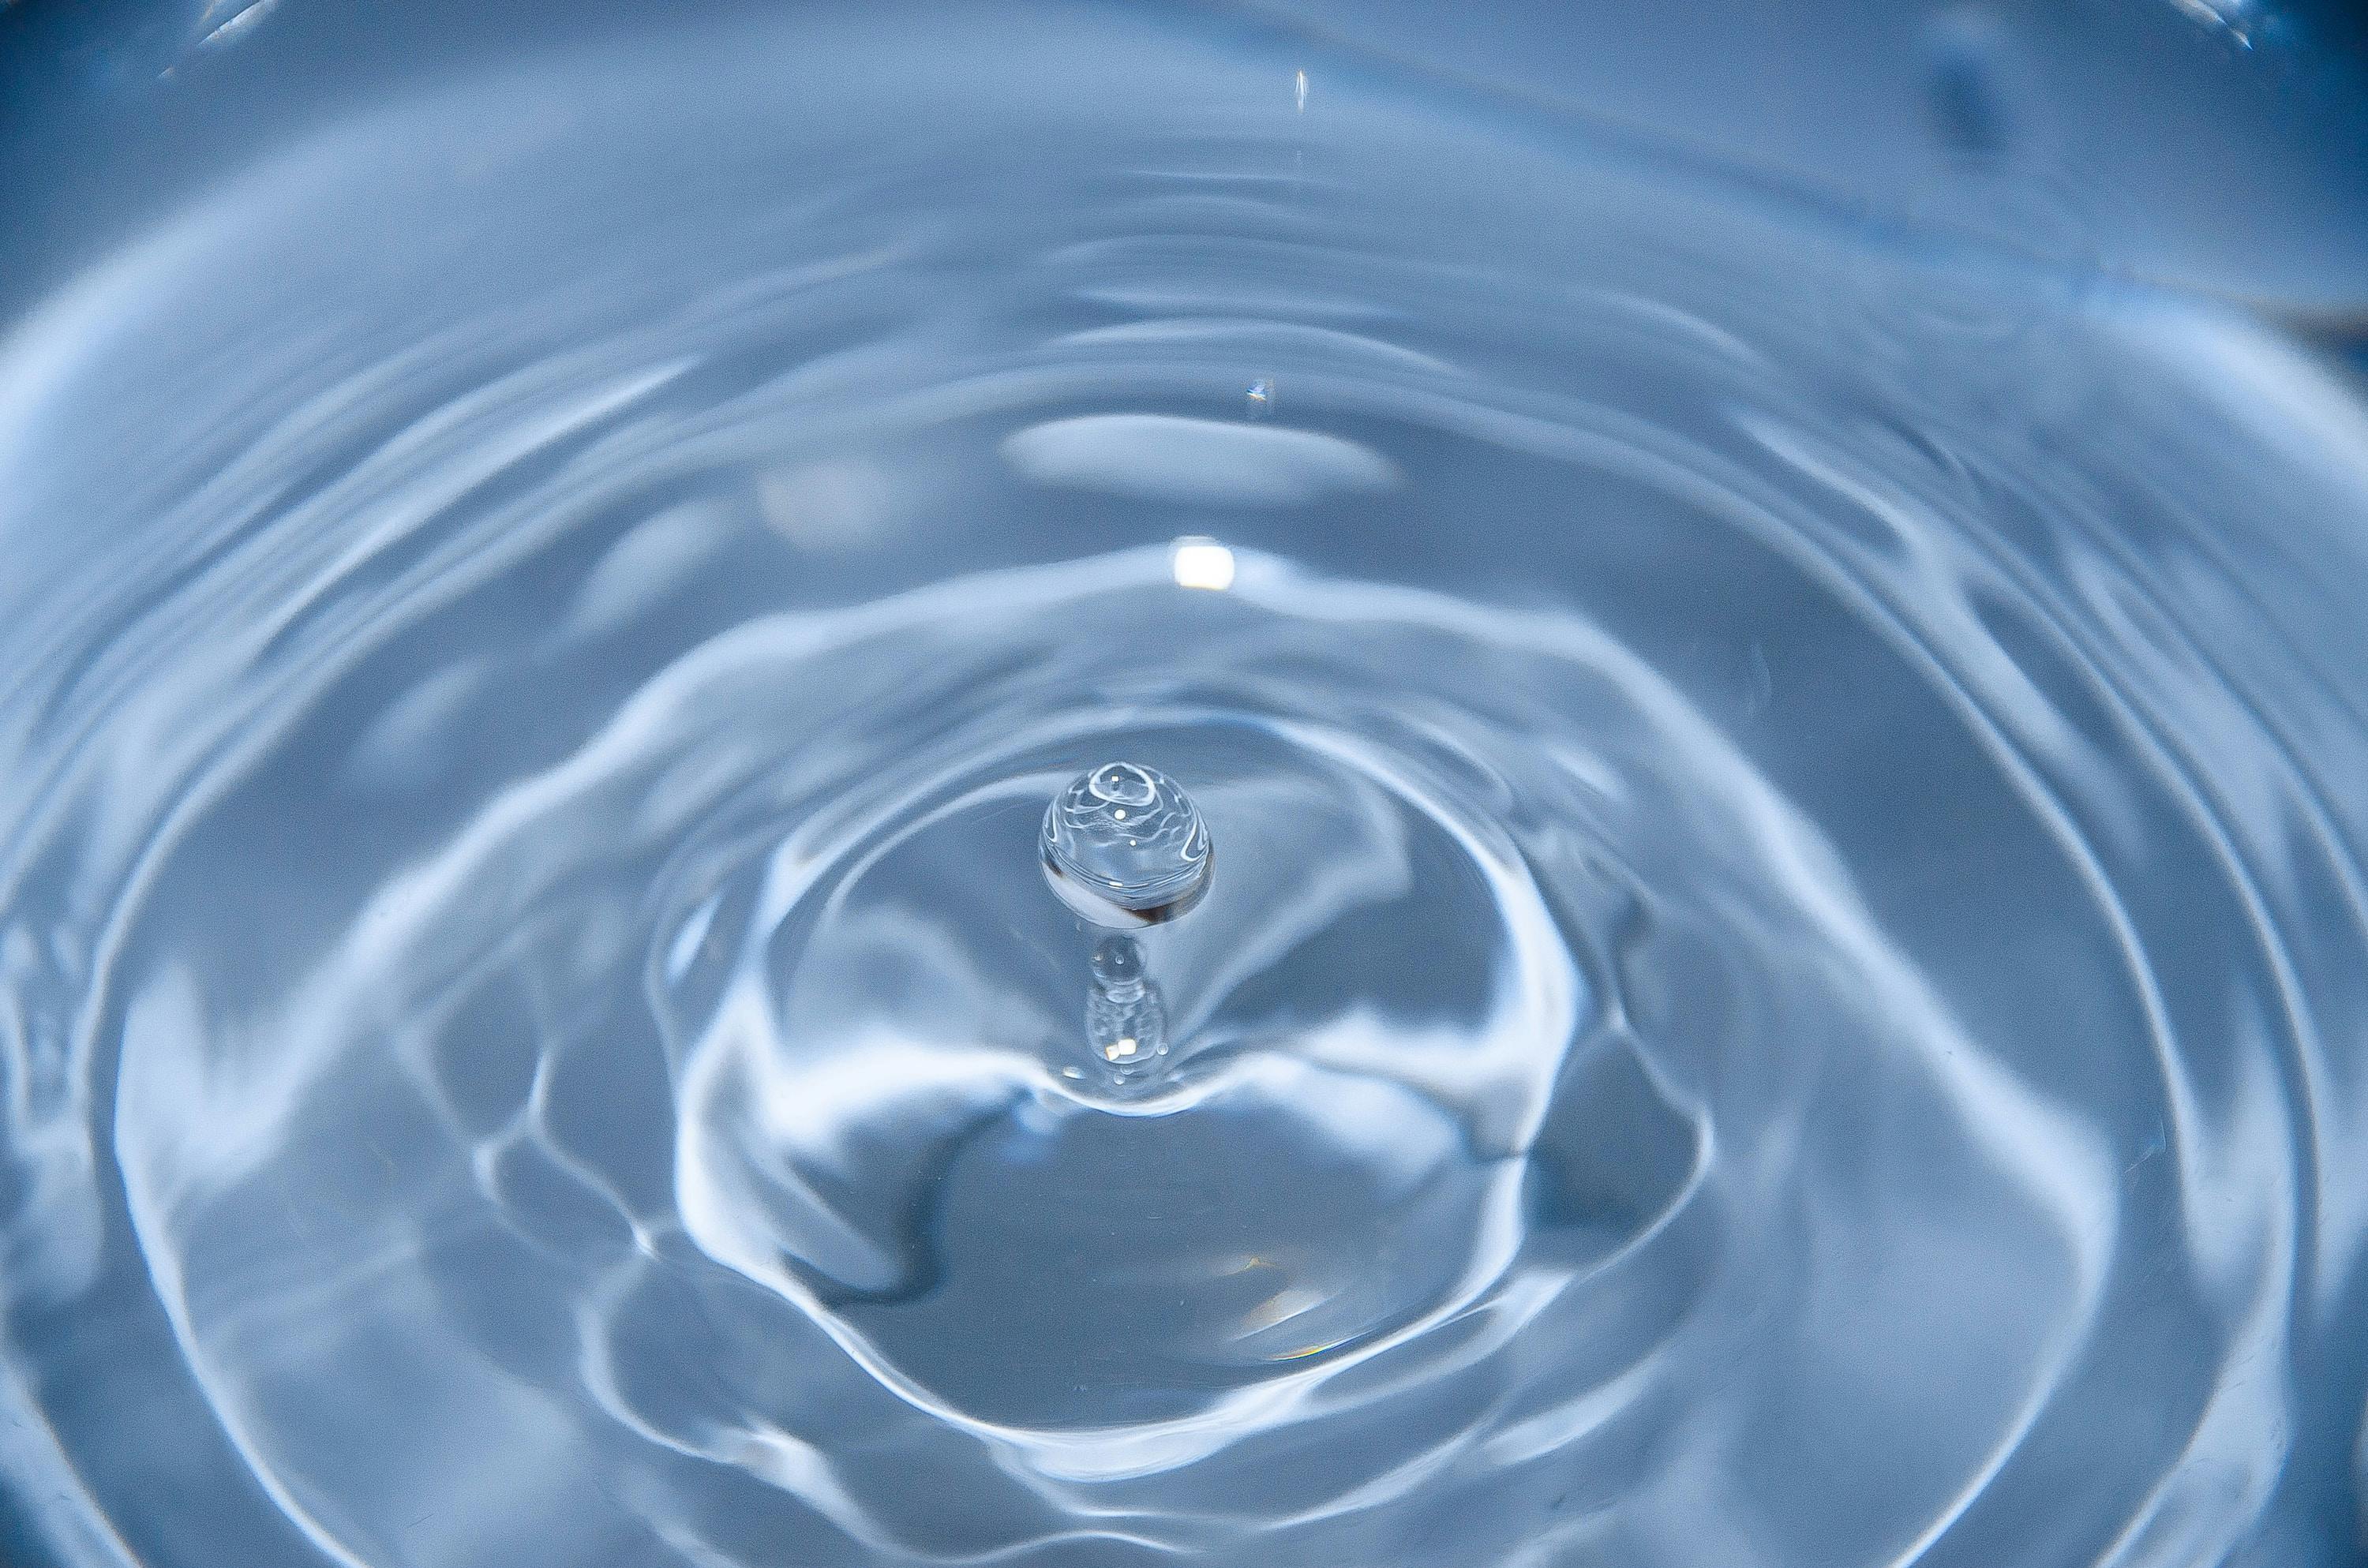 Gota de agua limpia y cristalina generando salpicaduras y ondas en la superficie.